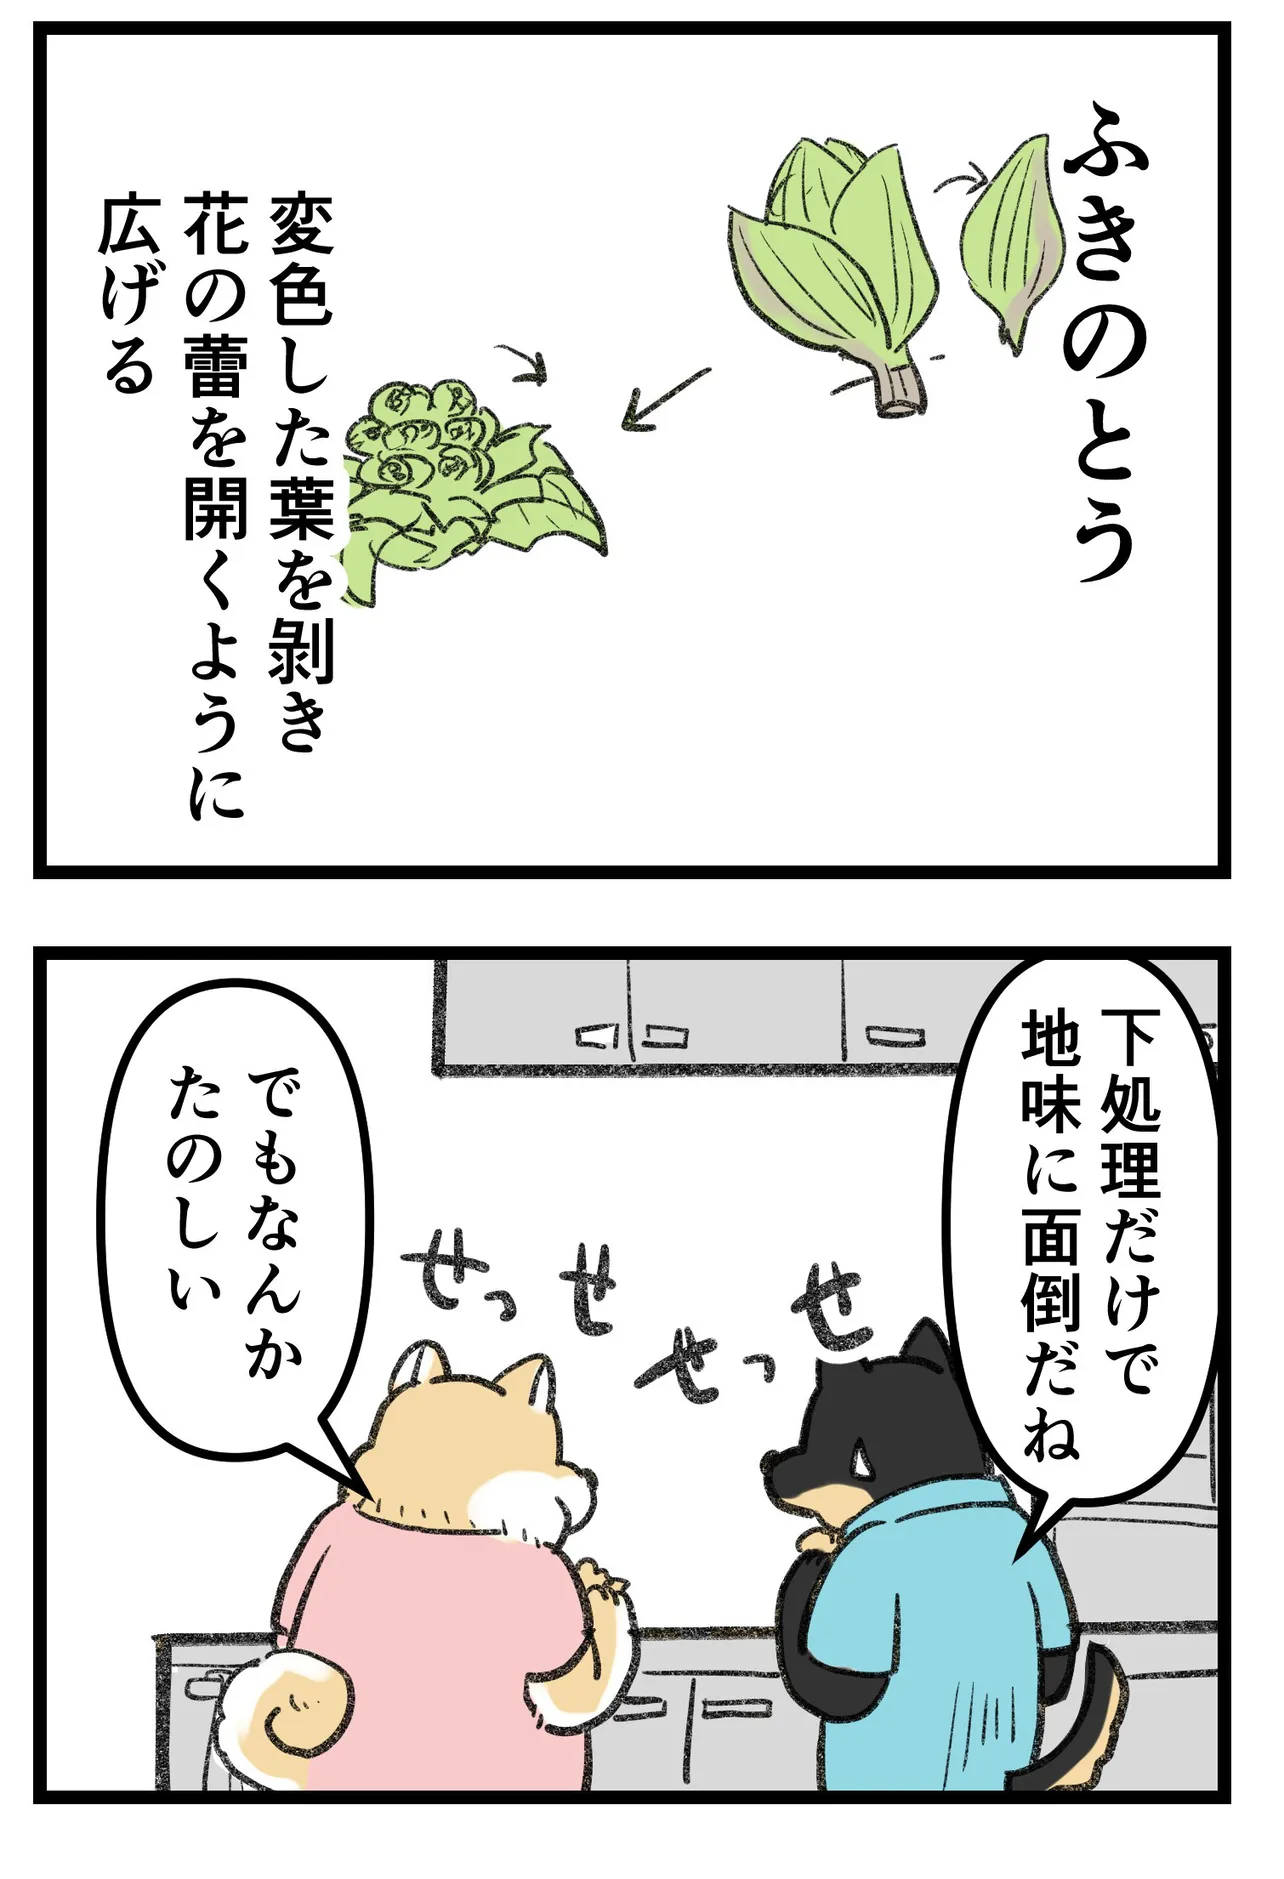 『柴犬二匹が山菜の天ぷらを作って食べる話』(6/16)